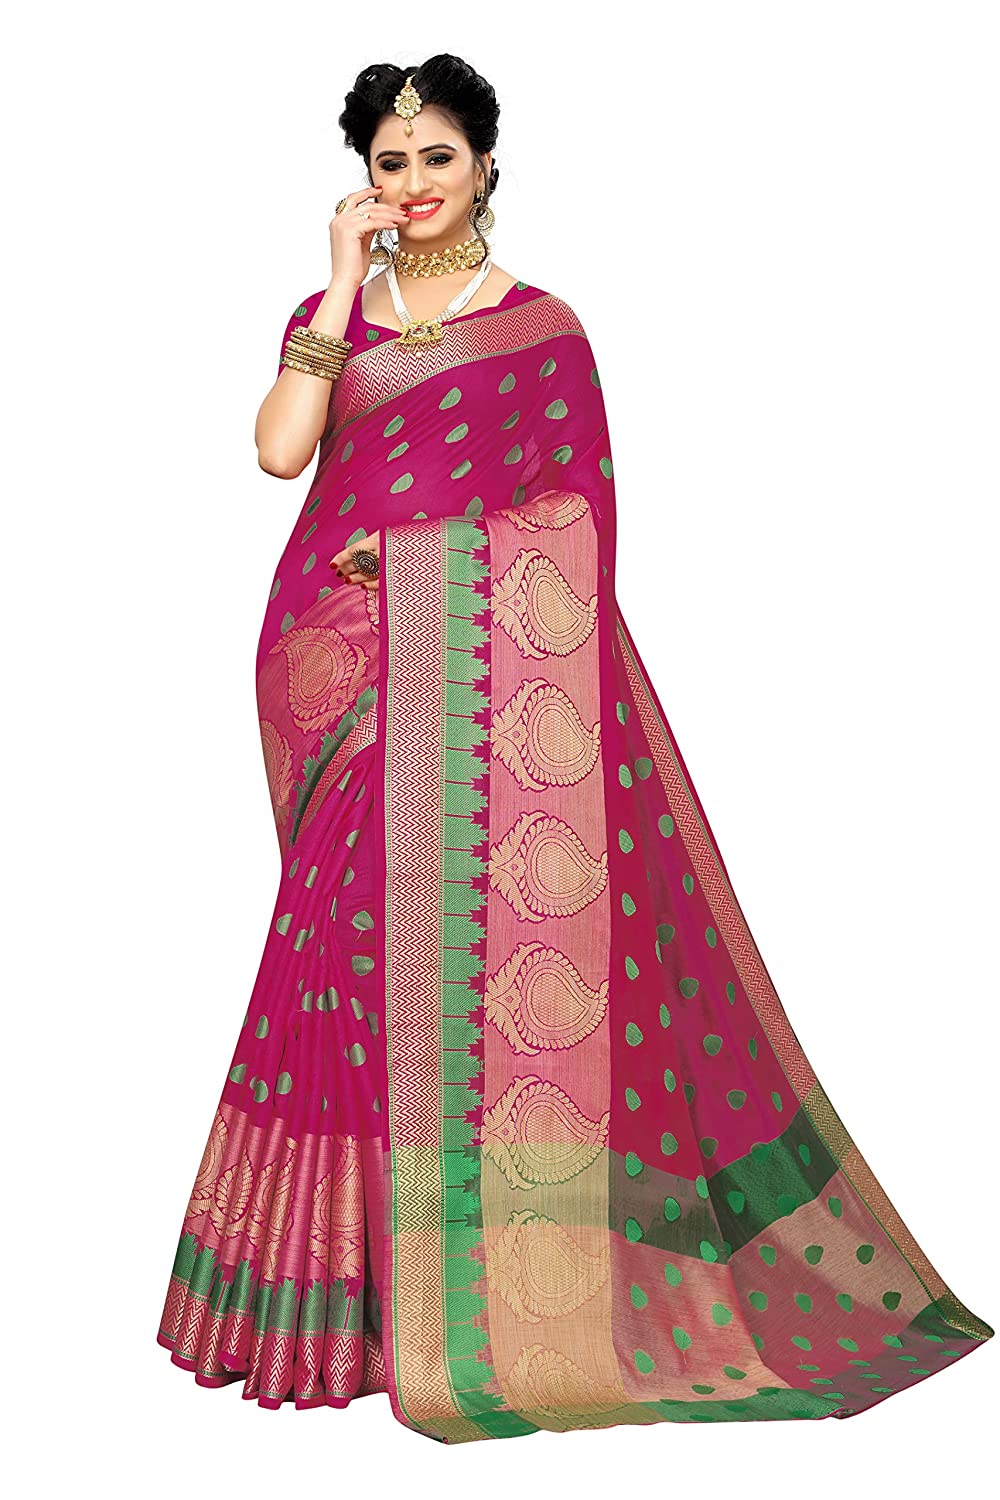 Anni Designer Women's Pink Color Art Banarasi Silk Jacquard Print Saree With Blouse Piece